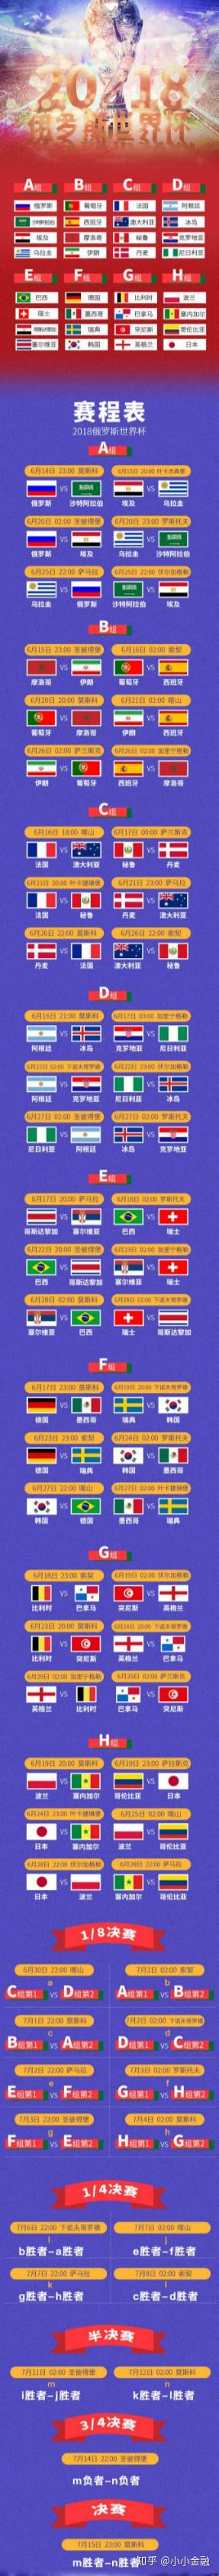 世界杯葡萄牙和西班牙_西班牙 葡萄牙_葡萄牙 西班牙 瓜分世界